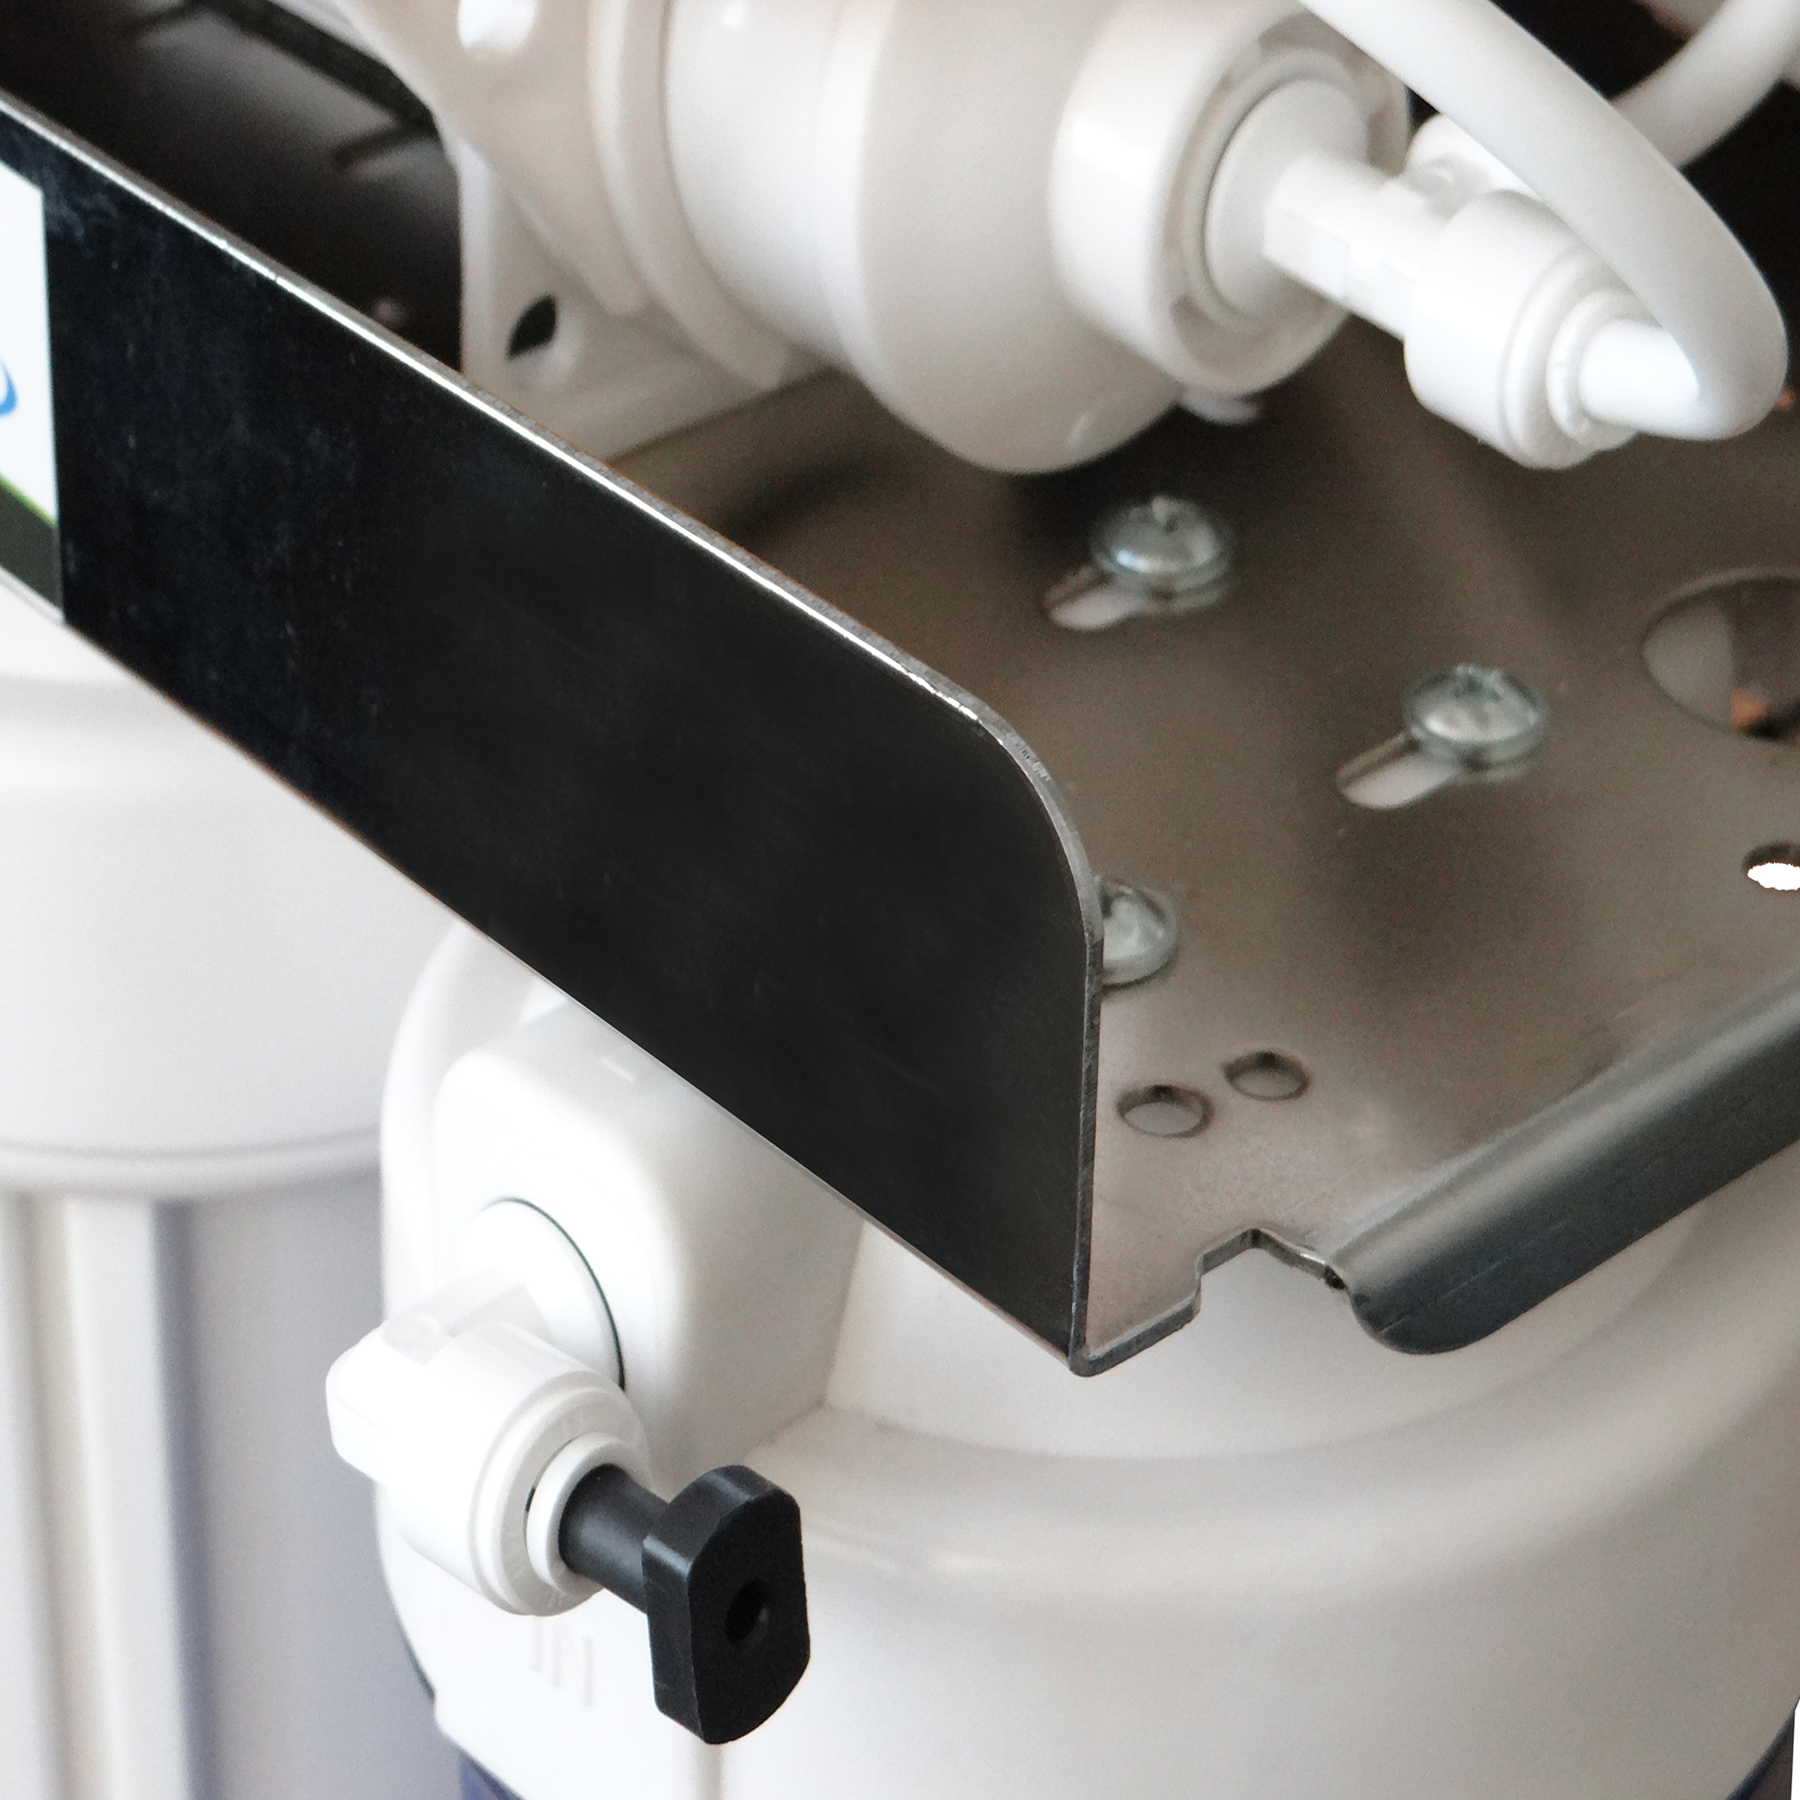 دستگاه تصفیه کننده آب آکوآ اسپرینگ مدل CHROME-FSR9 به همراه فیلتر مجموعه 4 عددی